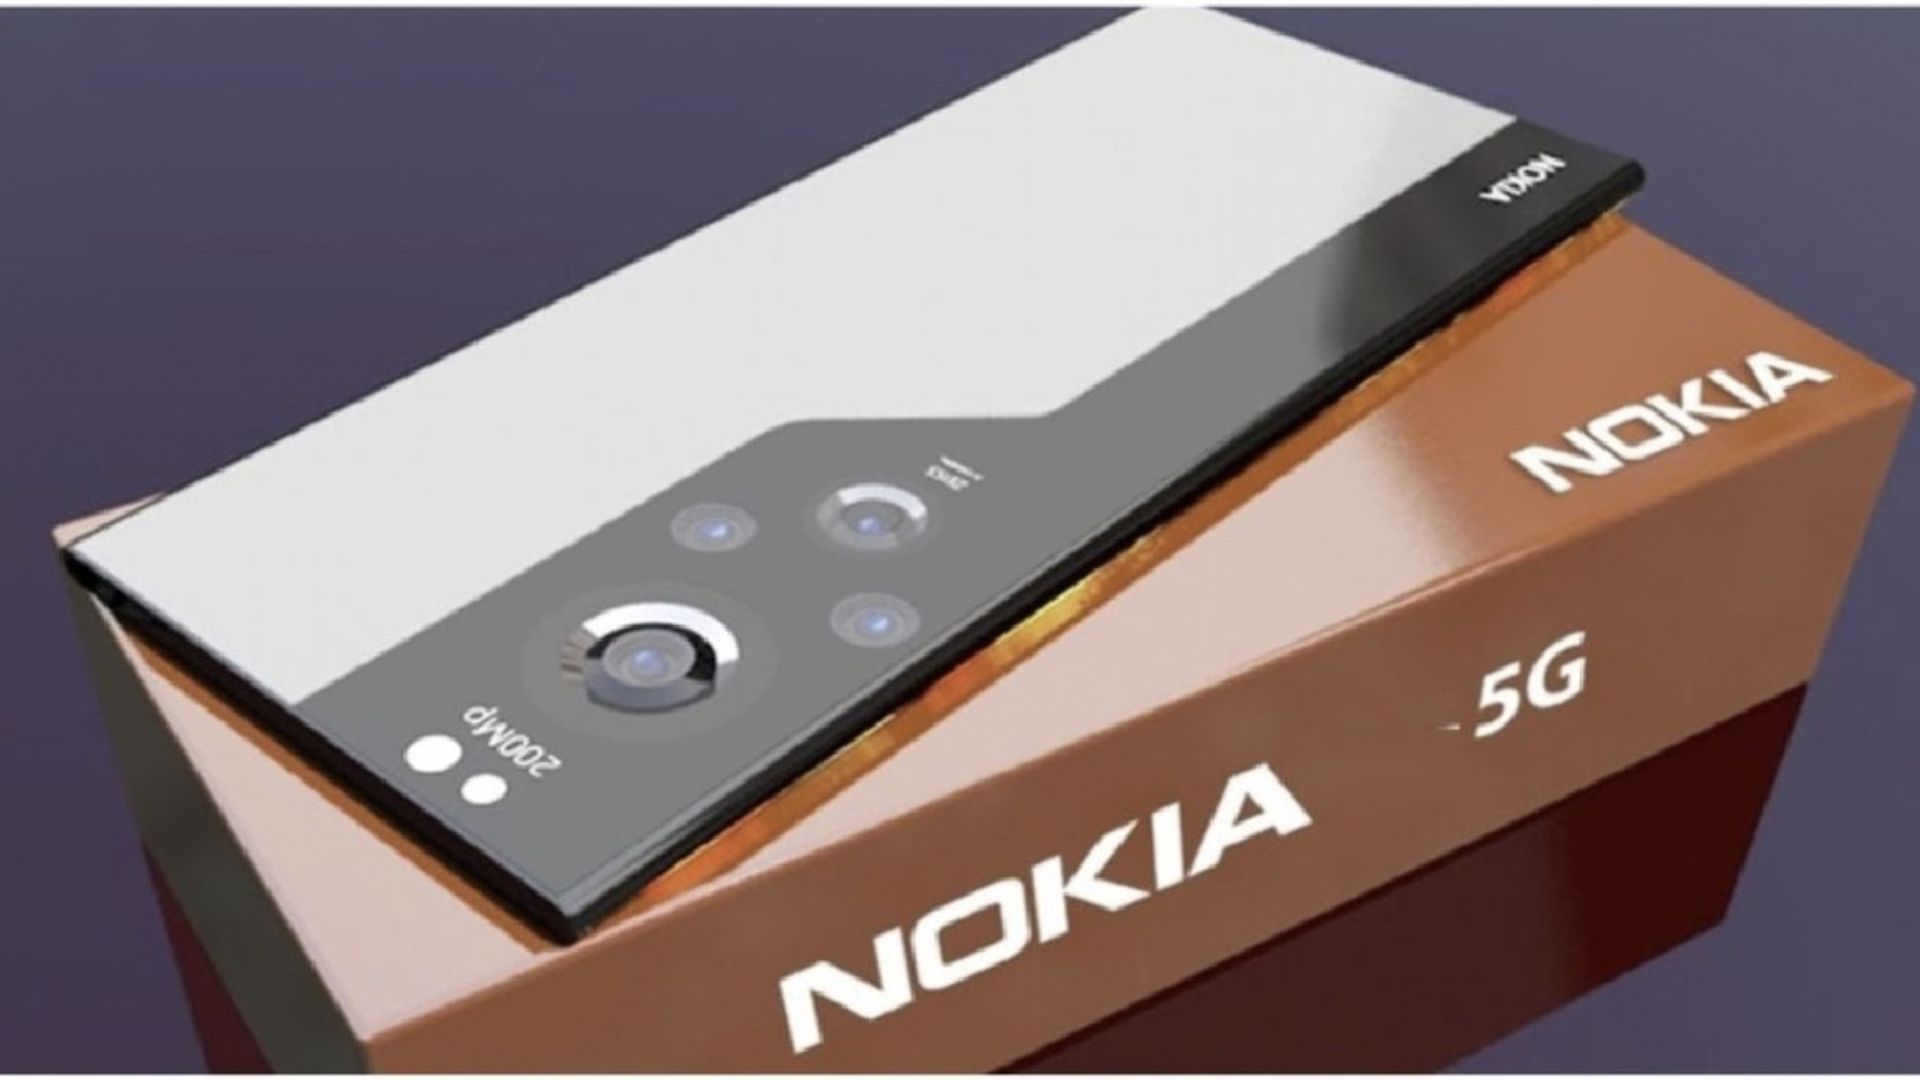 Nokia Hyper 5G Smartphone reviews